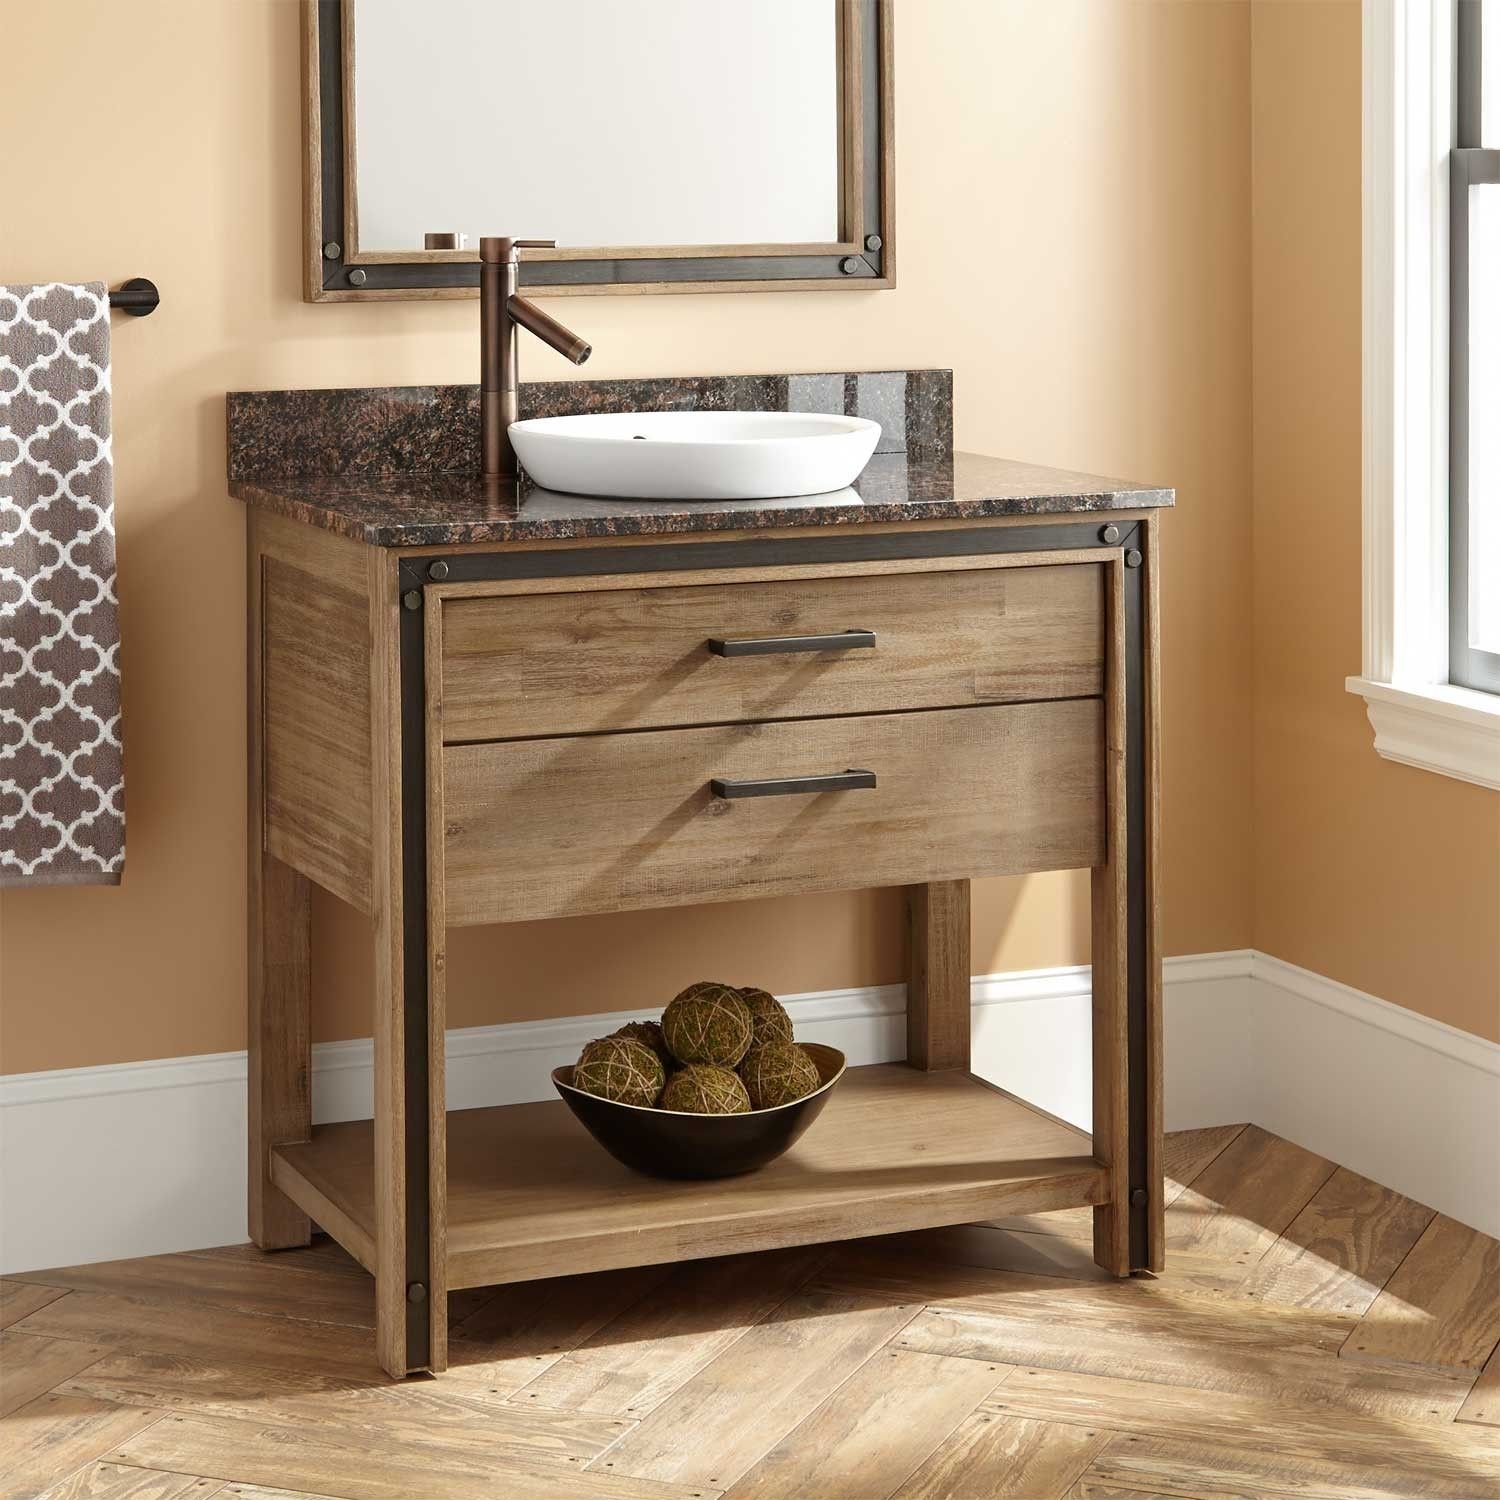 Мебель для ванны раковина с тумбой. Тумба под раковину. Тумбочка под раковину в ванную. Деревянная тумба под раковину в ванную. Тумбочка с раковиной для ванной комнаты.